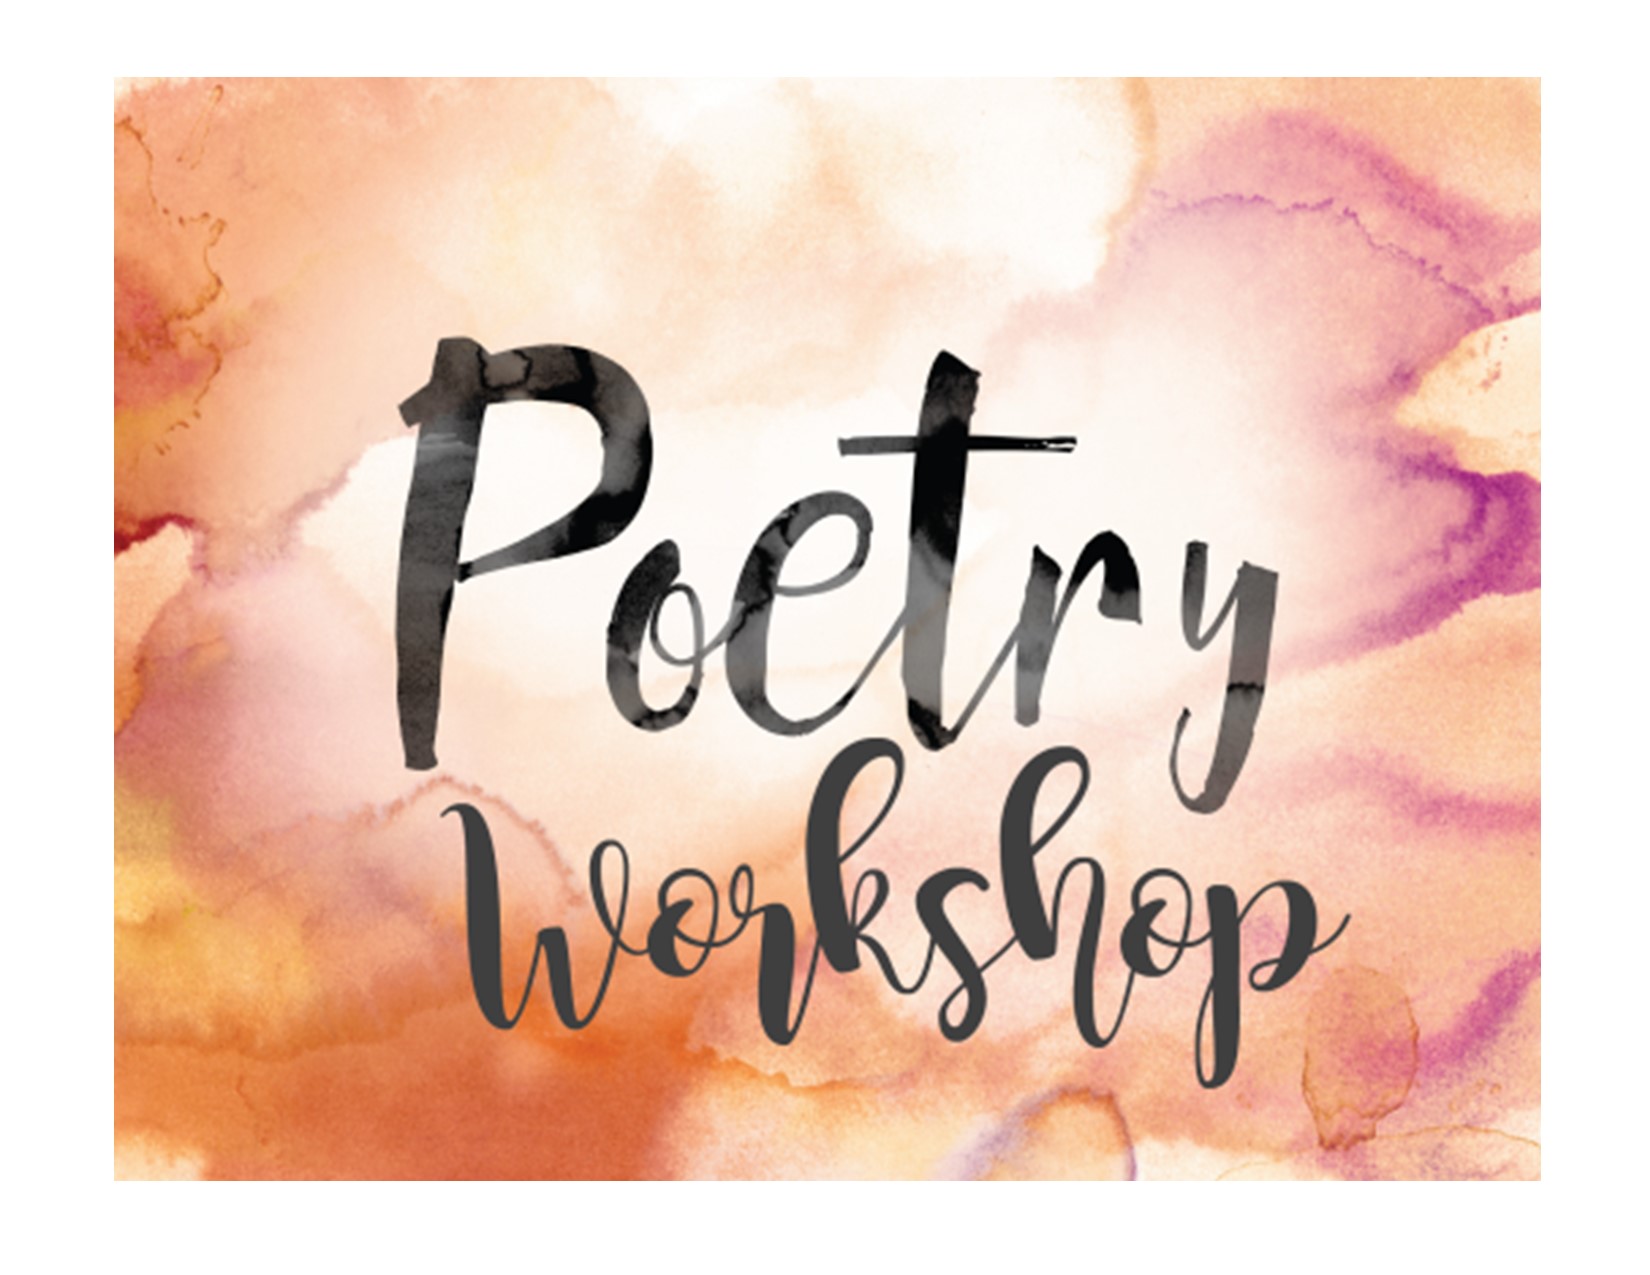 poetry workshop